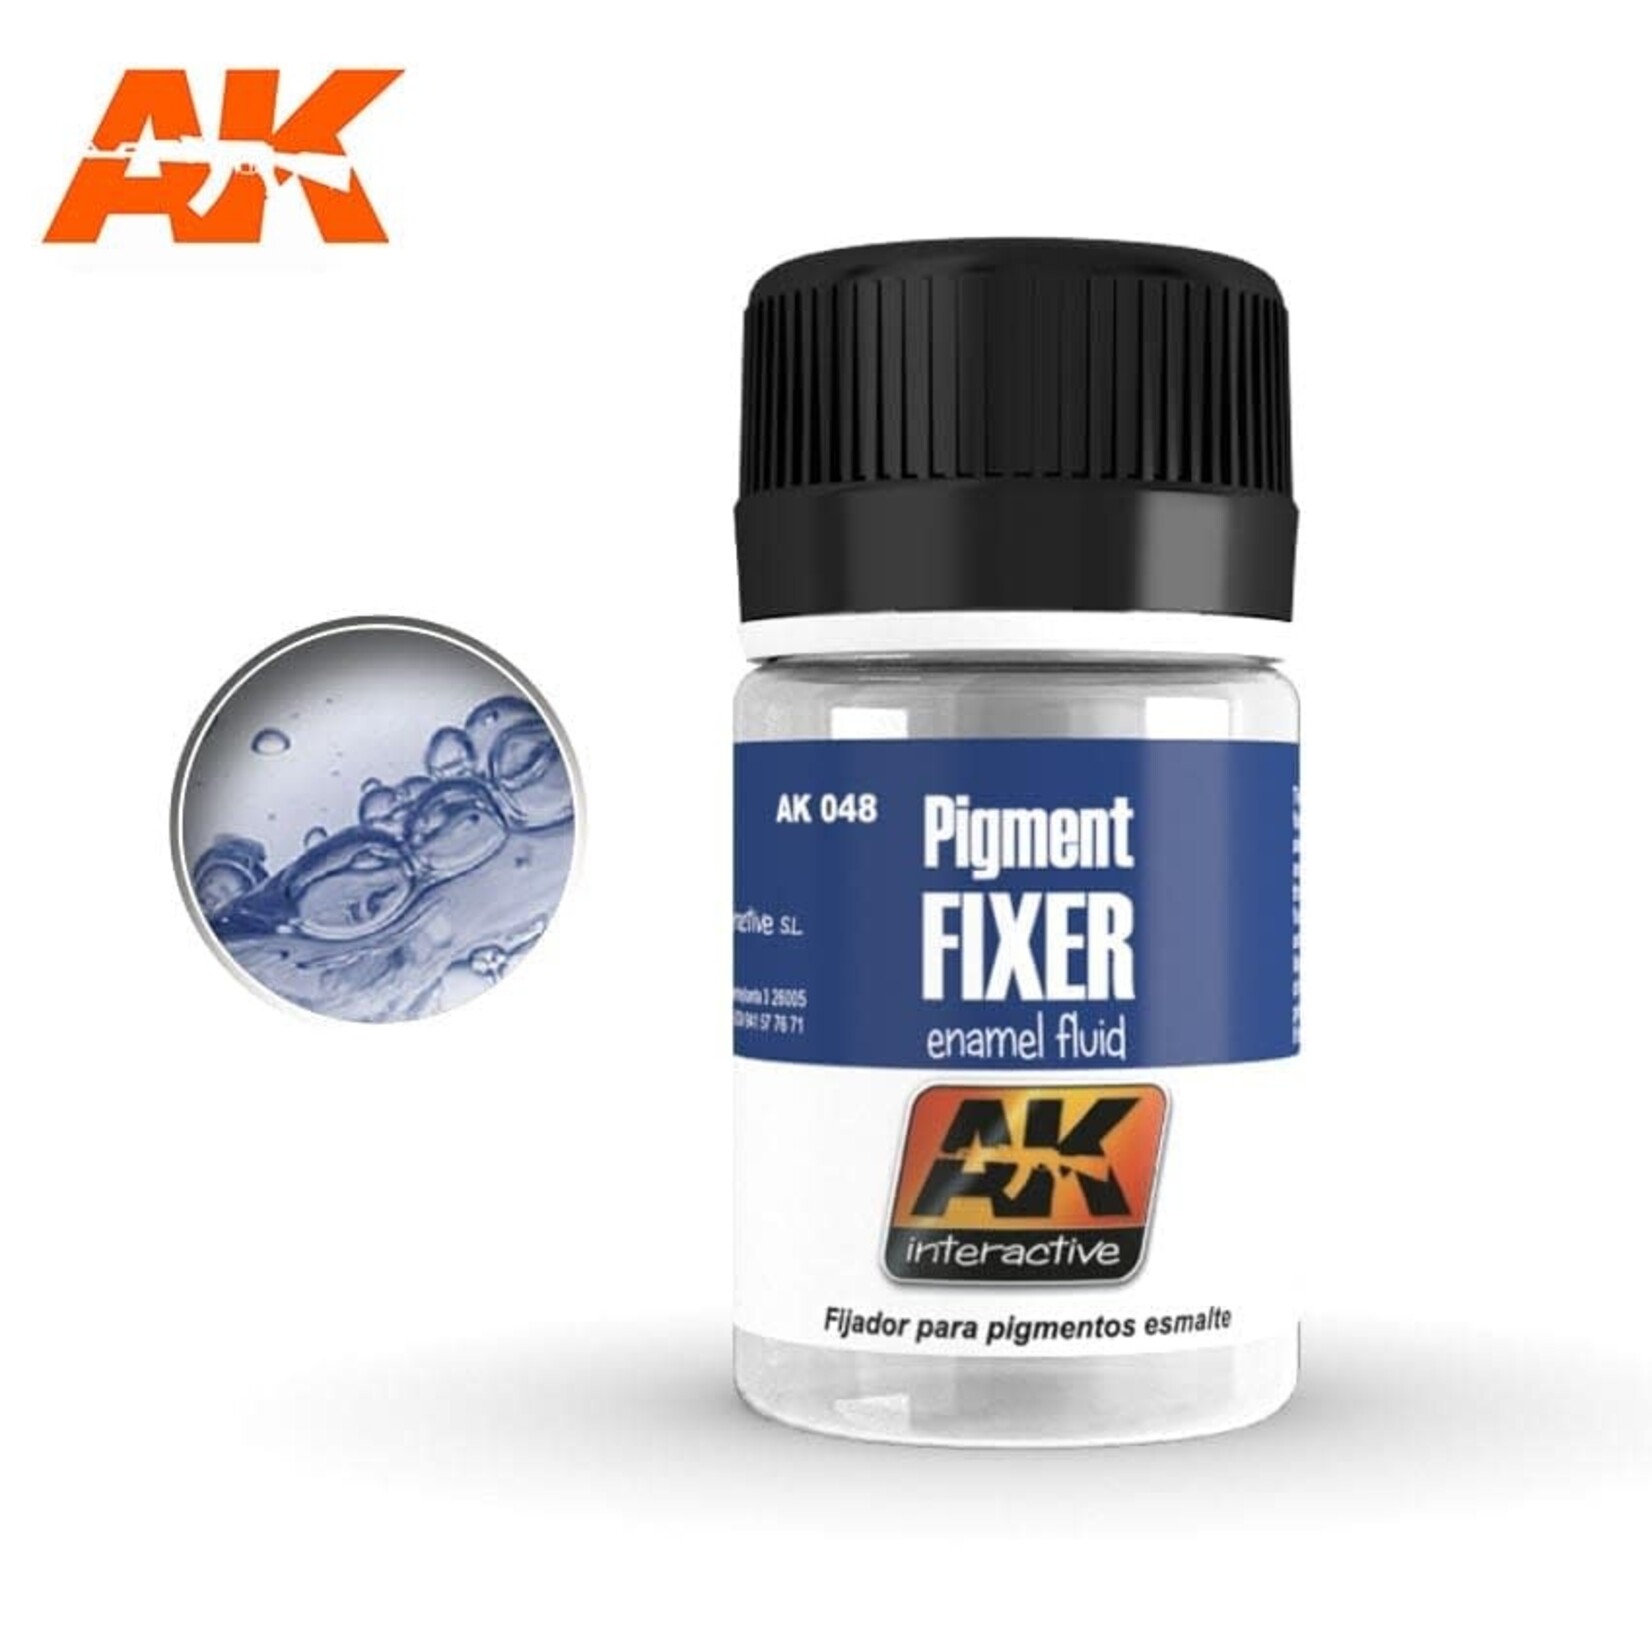 AK Interactive AK-048 Pigment Fixer